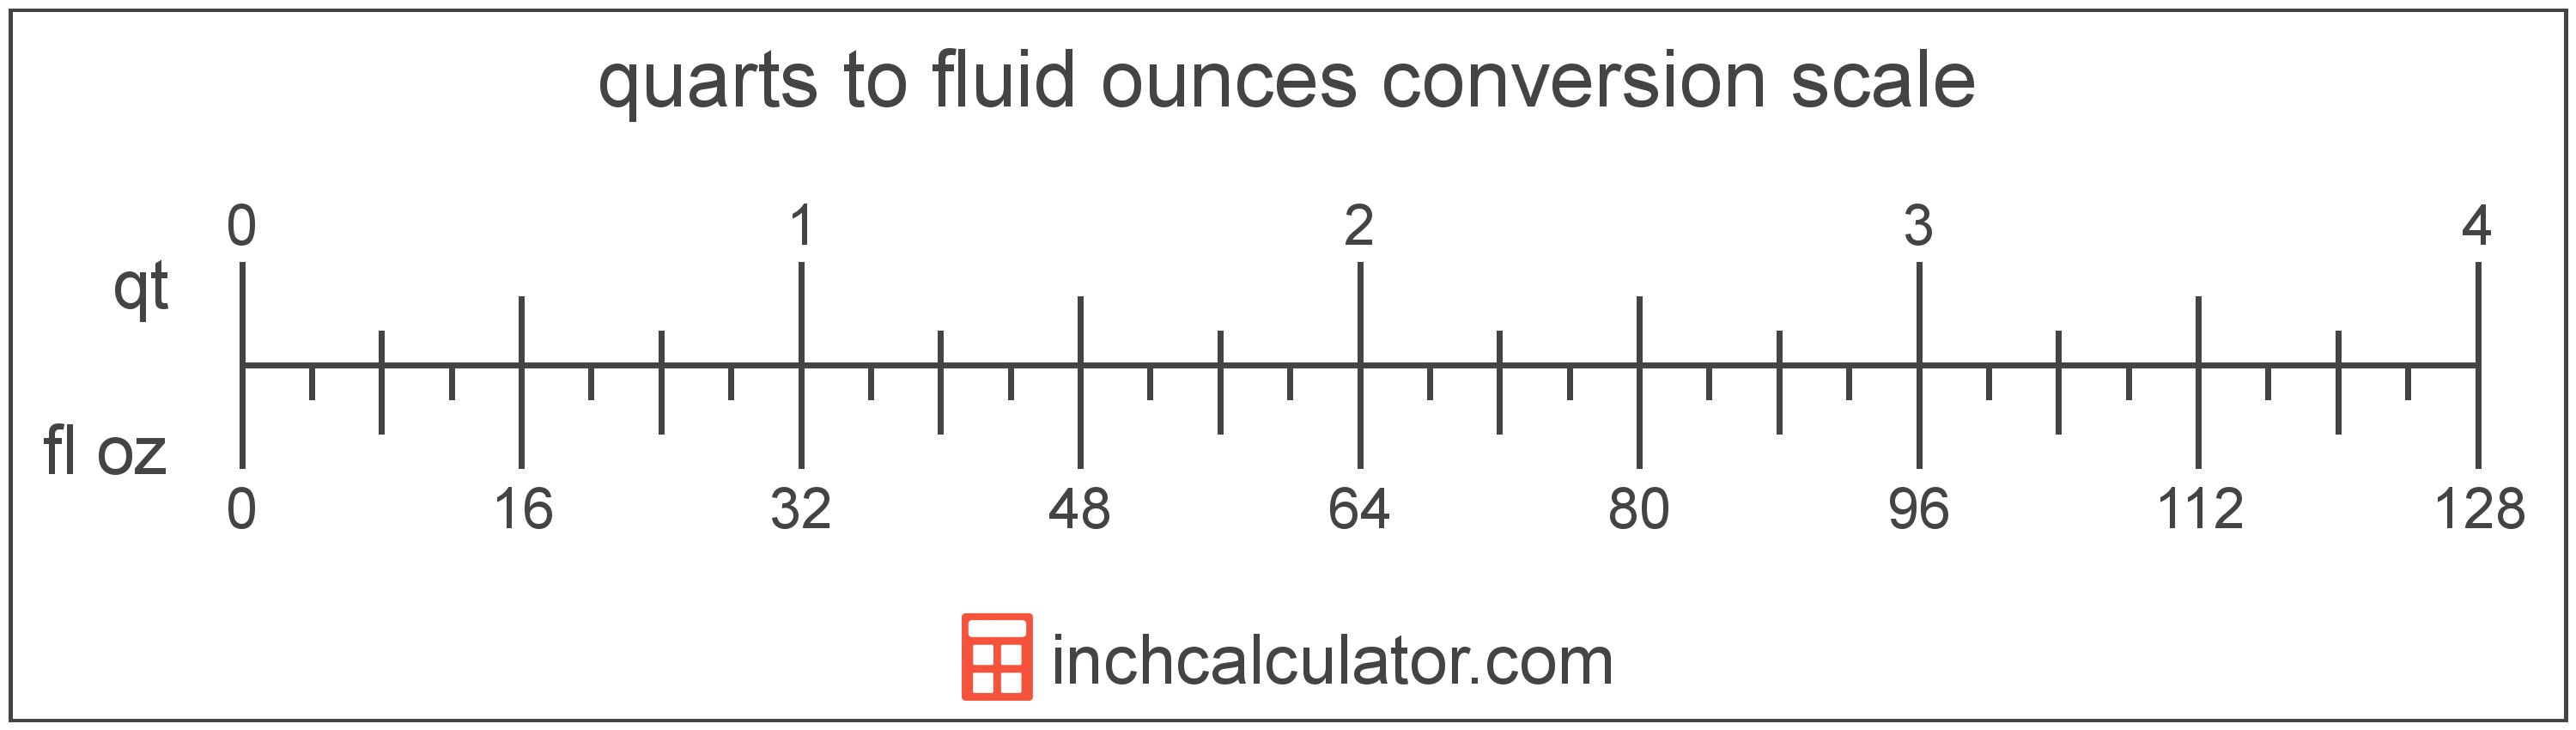 fluid-ounces-to-quarts-conversion-fl-oz-to-qt-inch-calculator